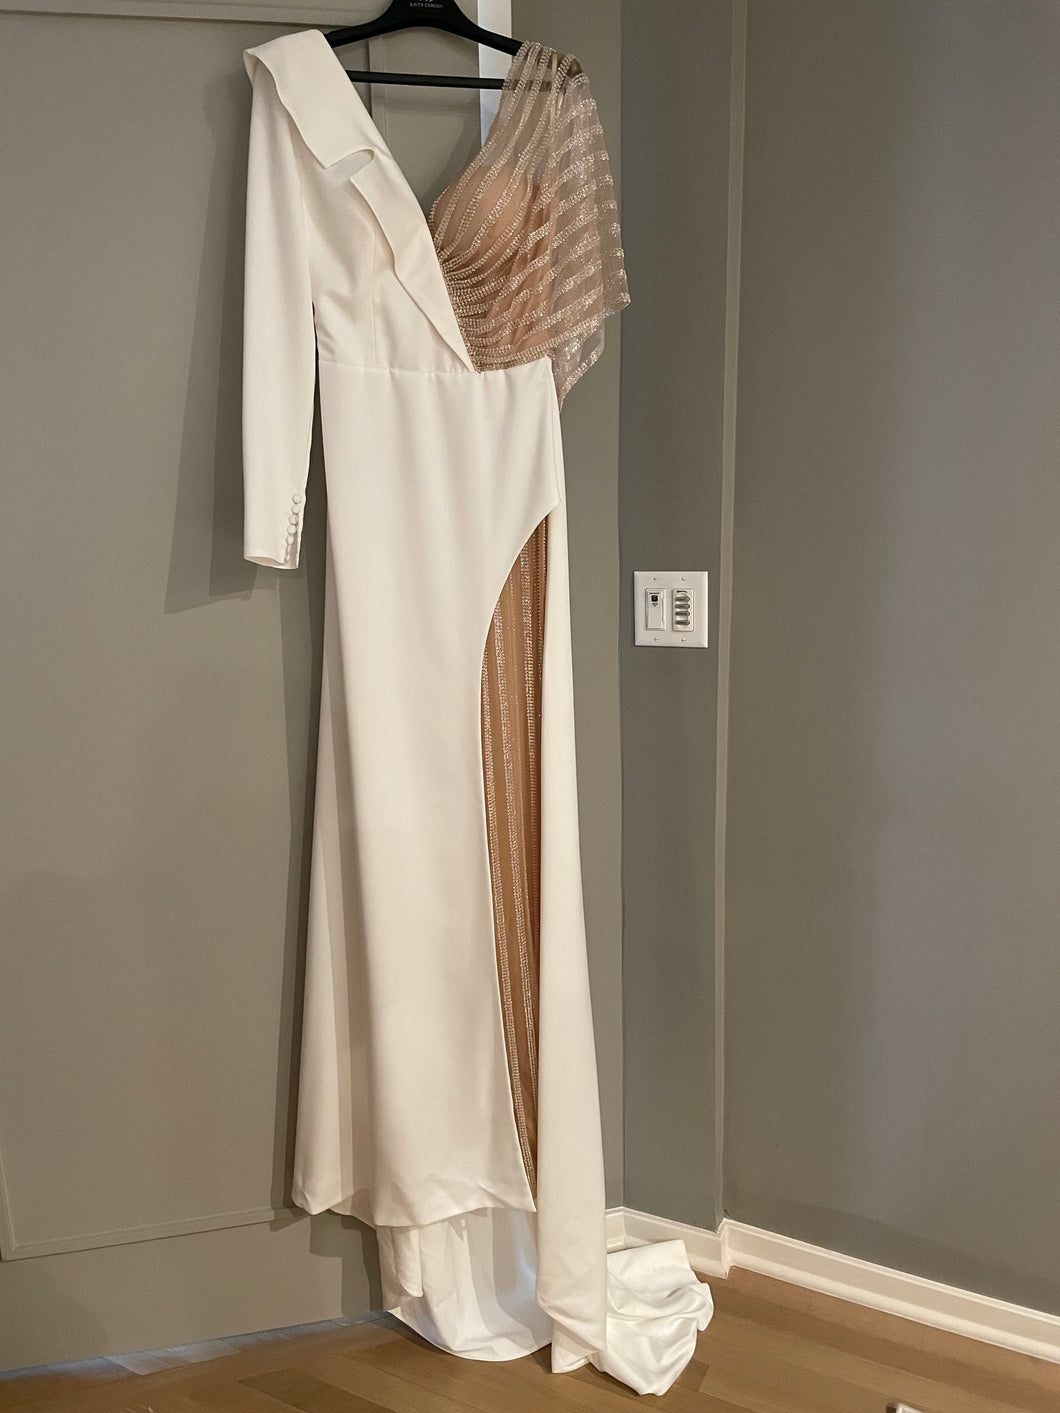 Katy Corso 'Denila' wedding dress size-08 NEW